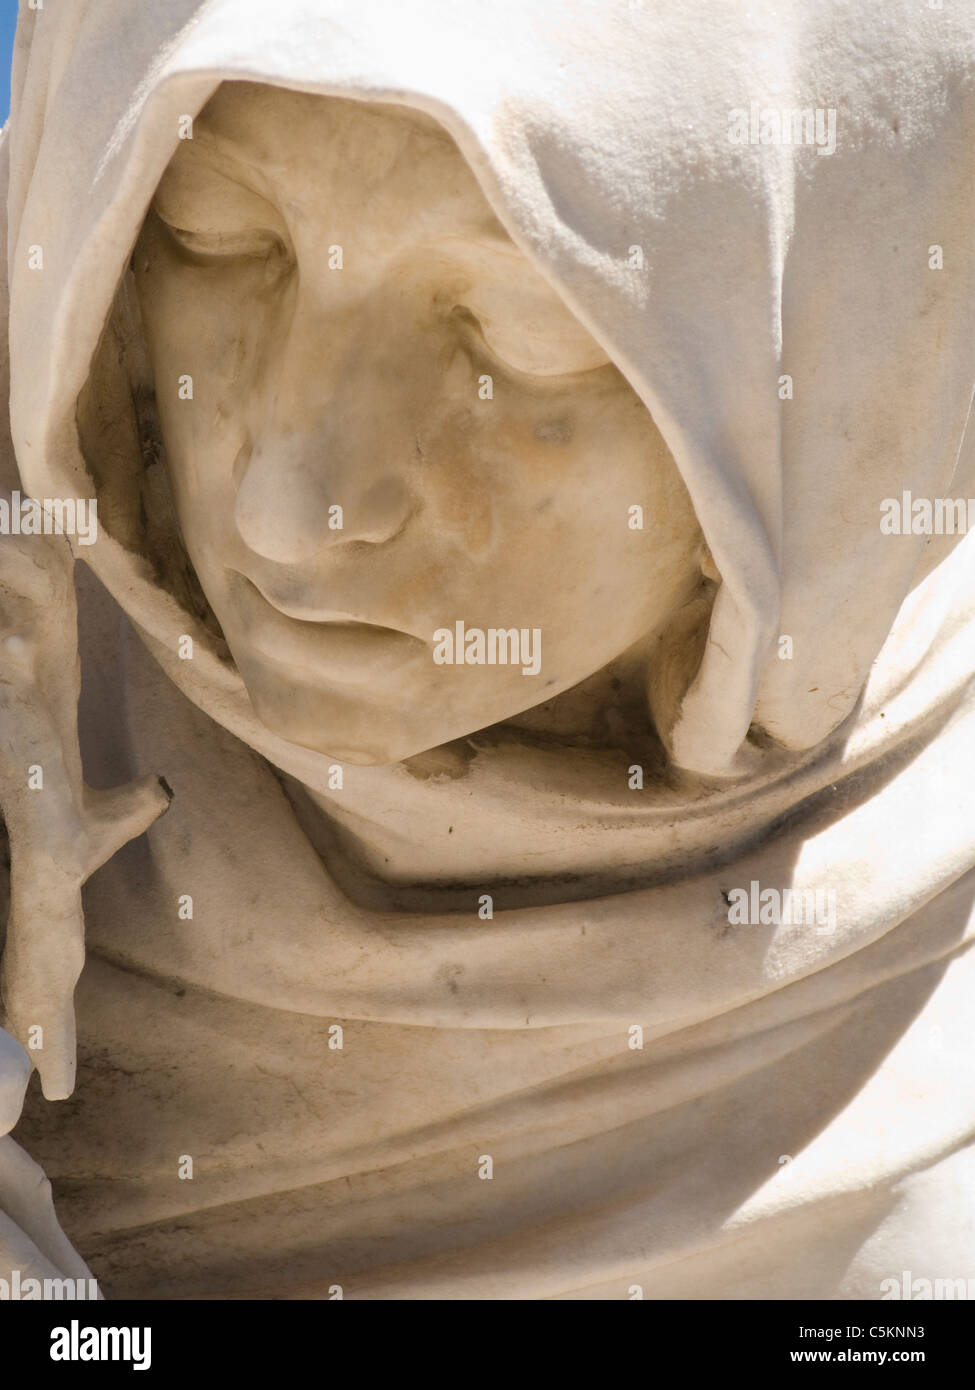 Détail d'une statue de pierre, le visage d'une femme en deuil à l'extérieur de l'église Notre-Dame de la Garde, Marseille, France Banque D'Images